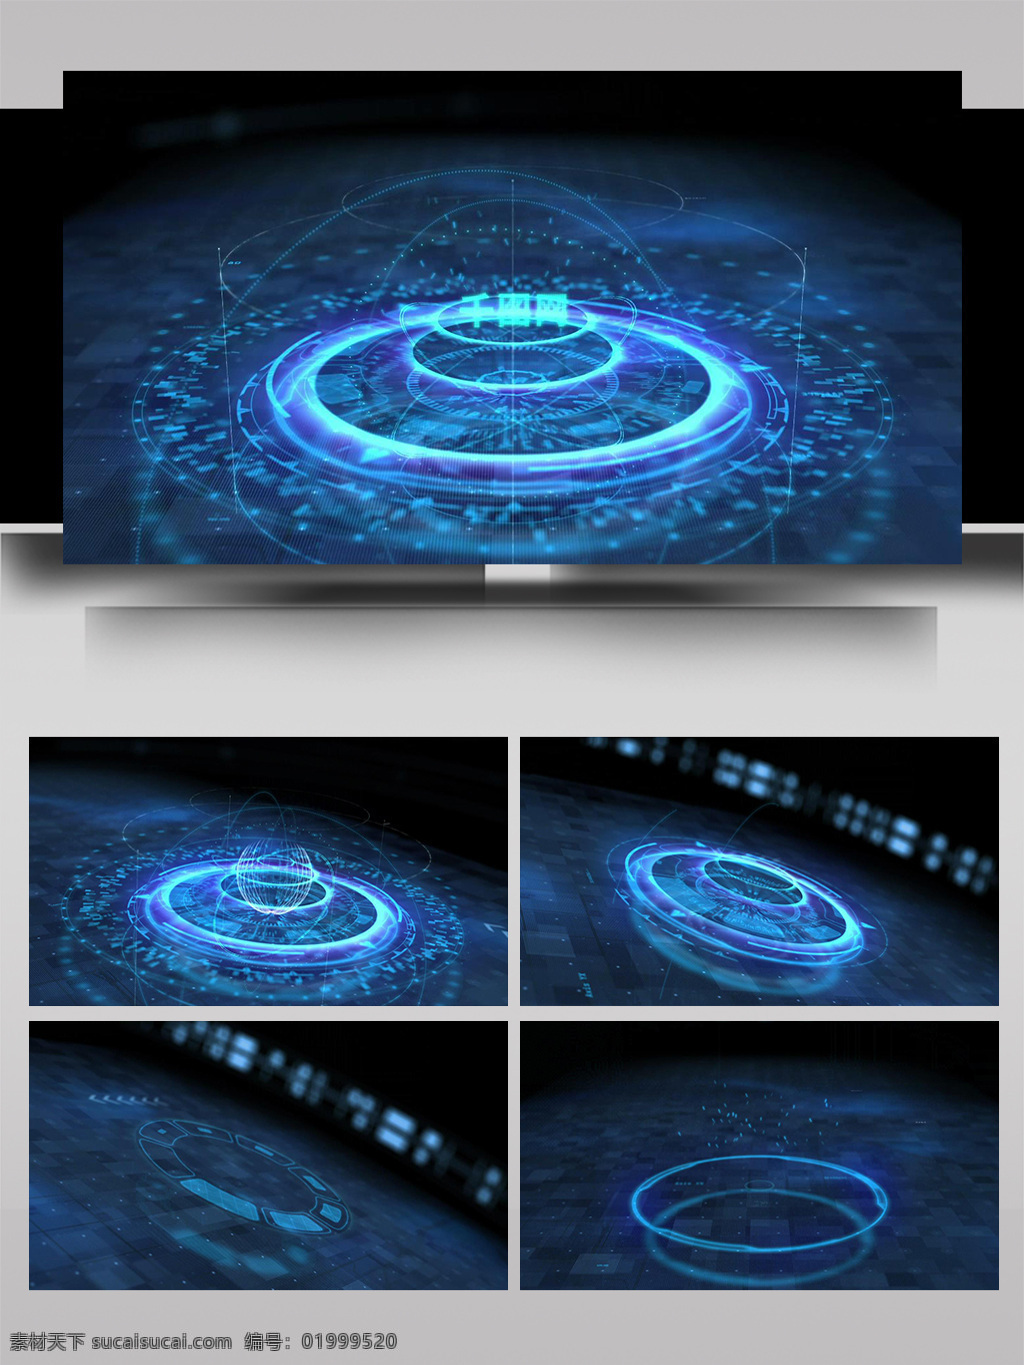 大气 科技 虚拟 光影 文字 展示 ae 模板 数字 动感 立体 数据 互联网 空间 片头 3d标志 扩散 组合 三维